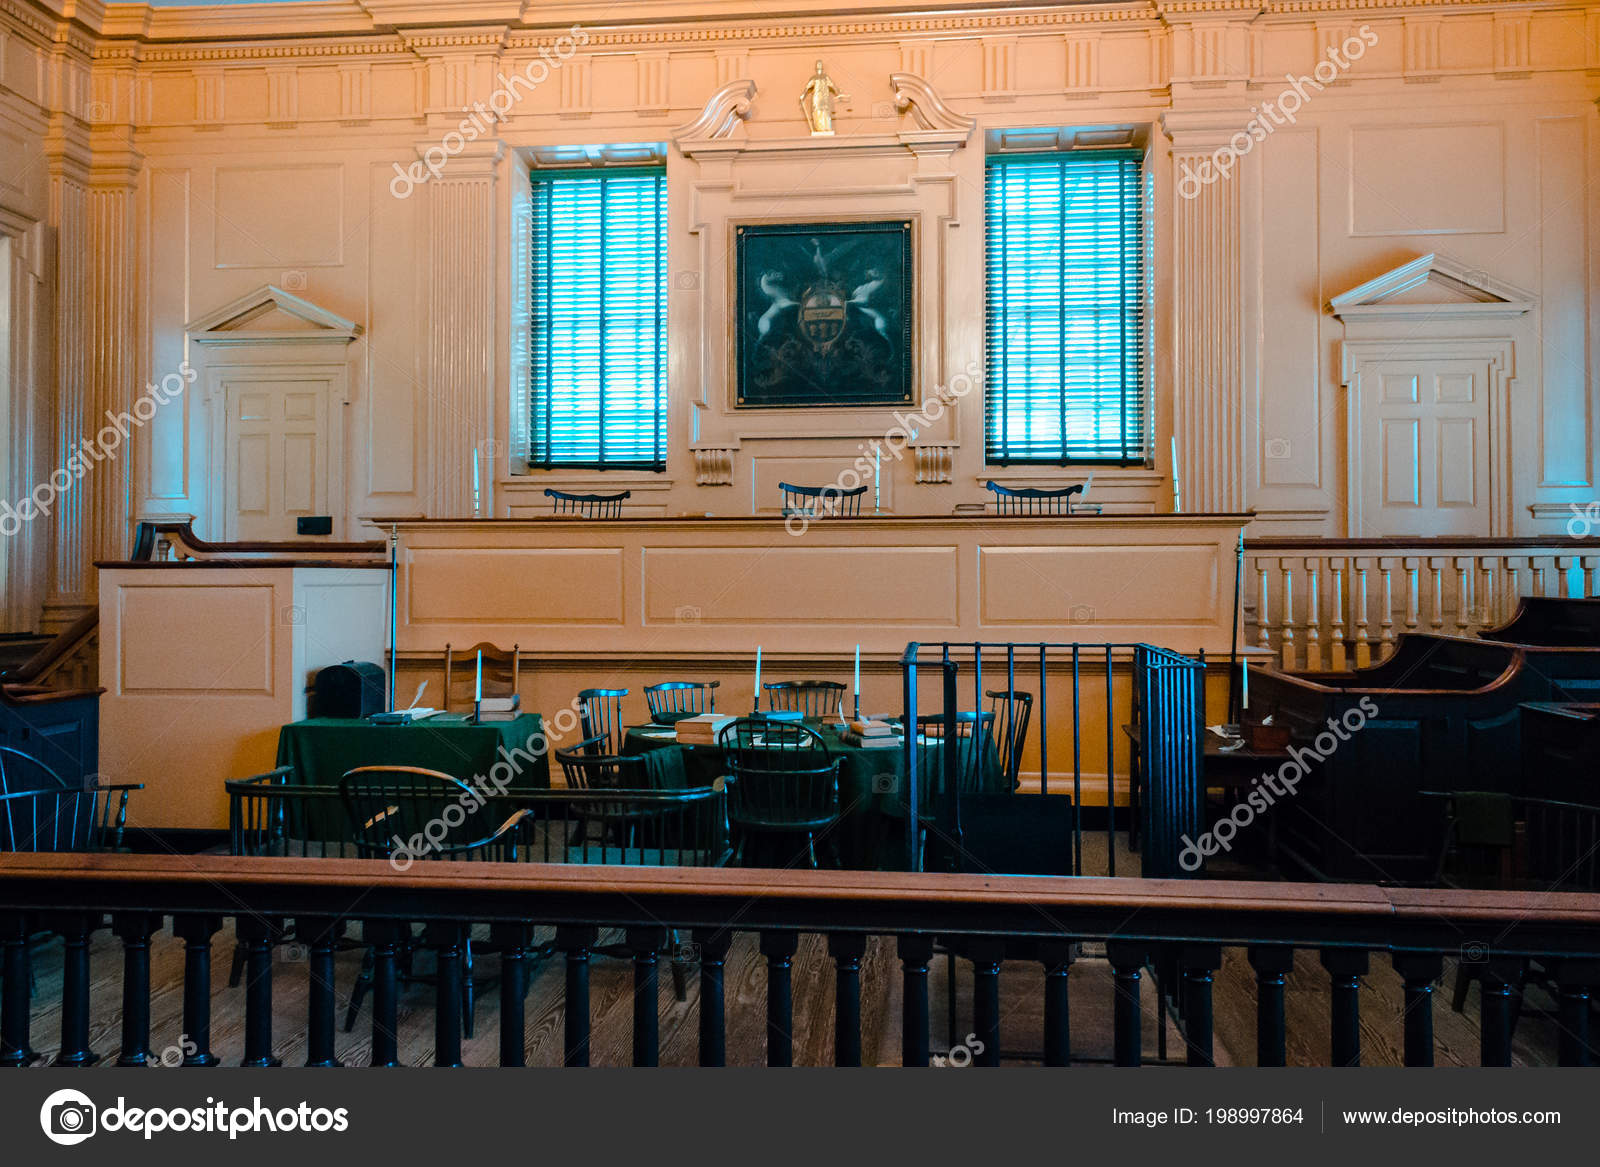 Philadelphia Pennsylvania August 23rd 2014 Independence Hall